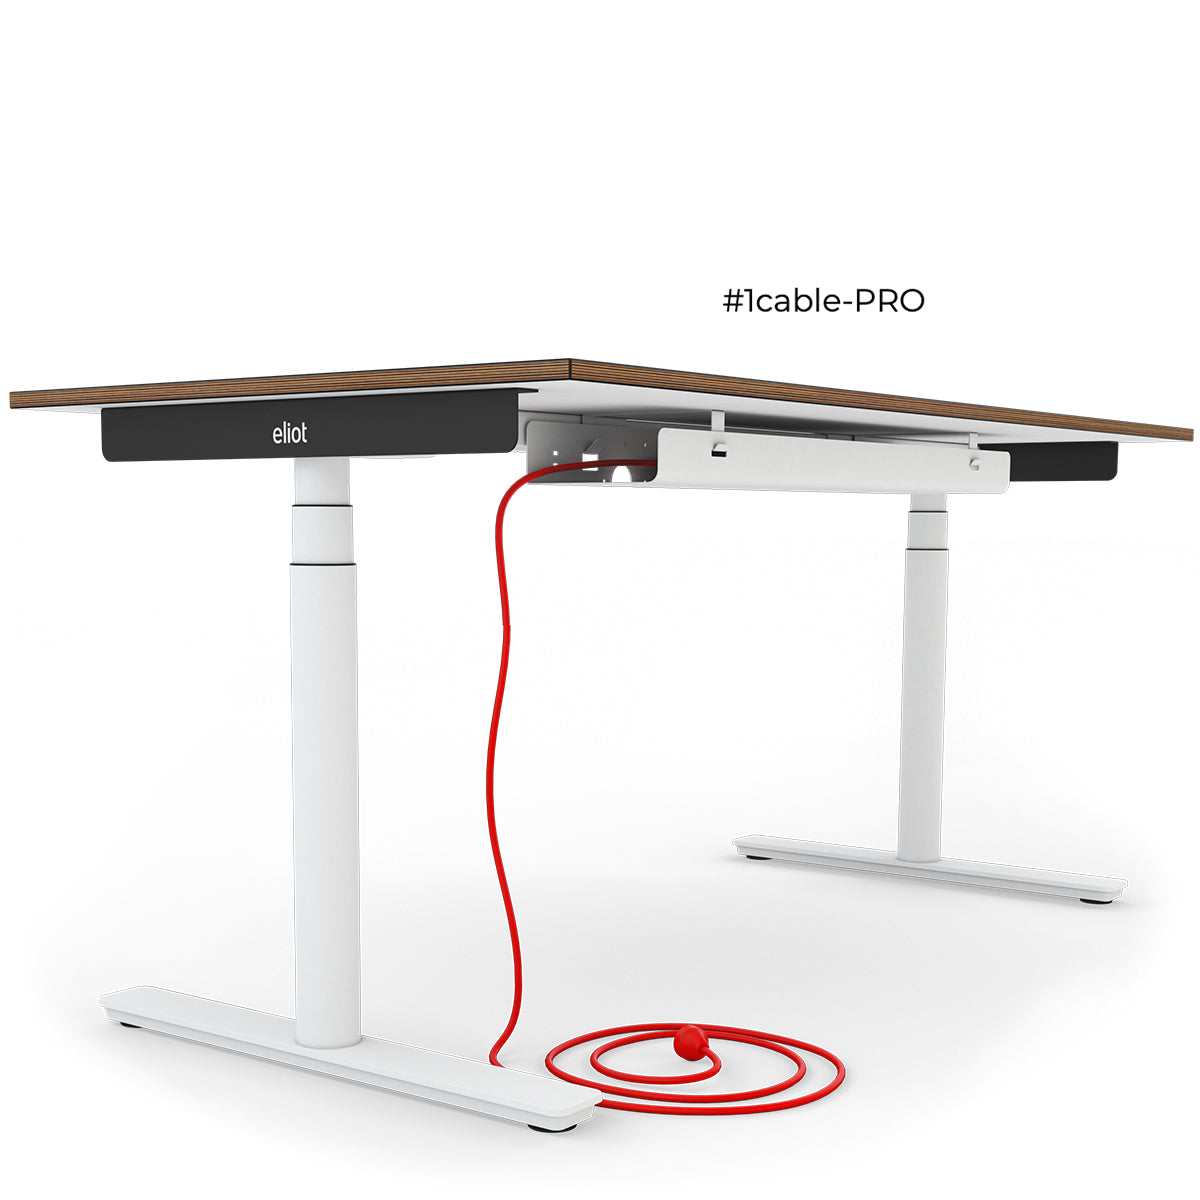 Höhenverstellbarer Schreibtisch Eliot mit zugeklappter Kabelwanne und rotem Kabel freigestellt auf weißem Hintergrund